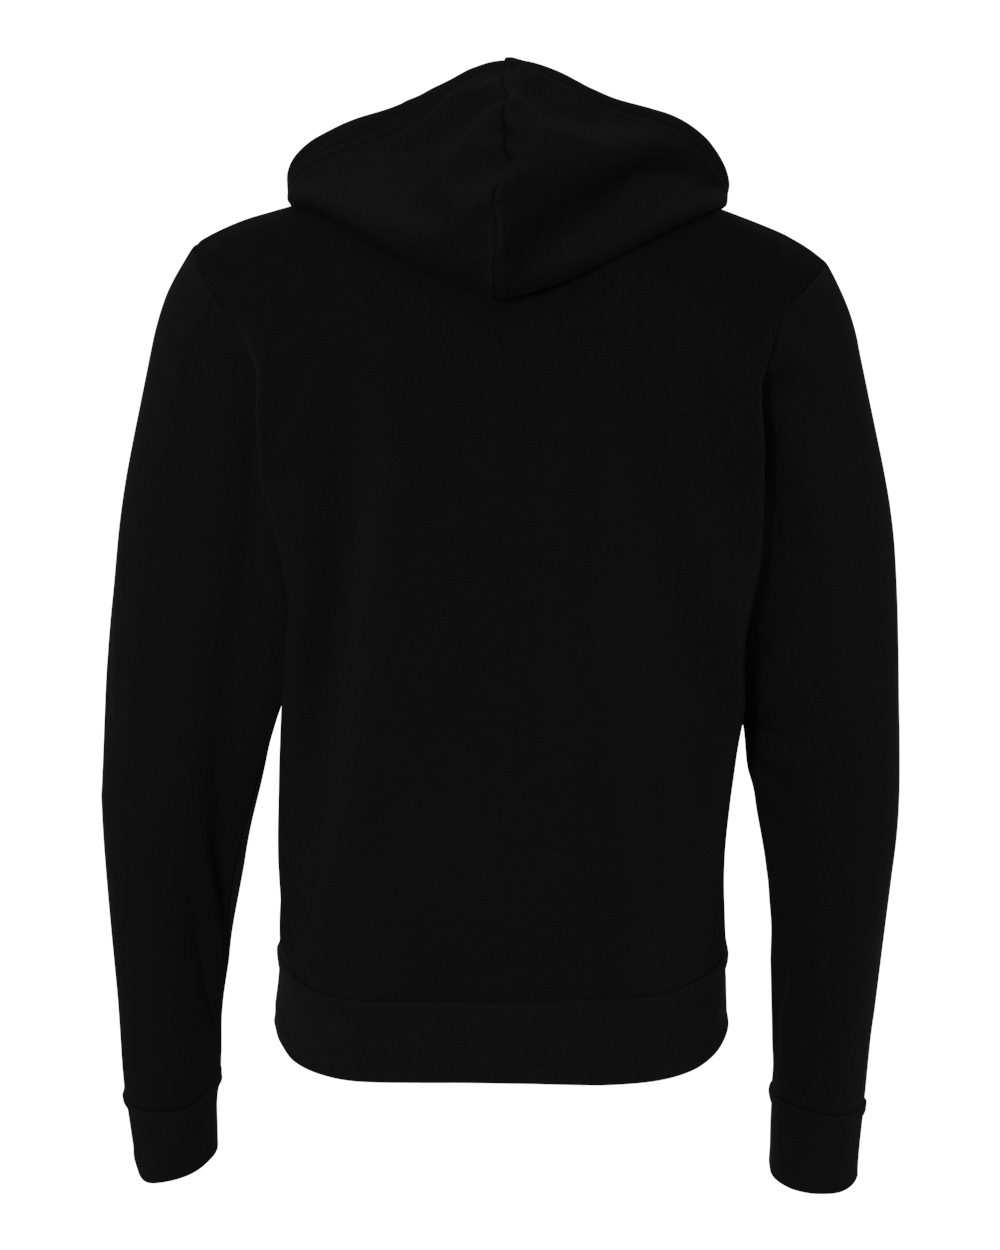 Bella + Canvas Unisex Full Zip Up Hooded Sweatshirt Blank Hoodie 3739 ...